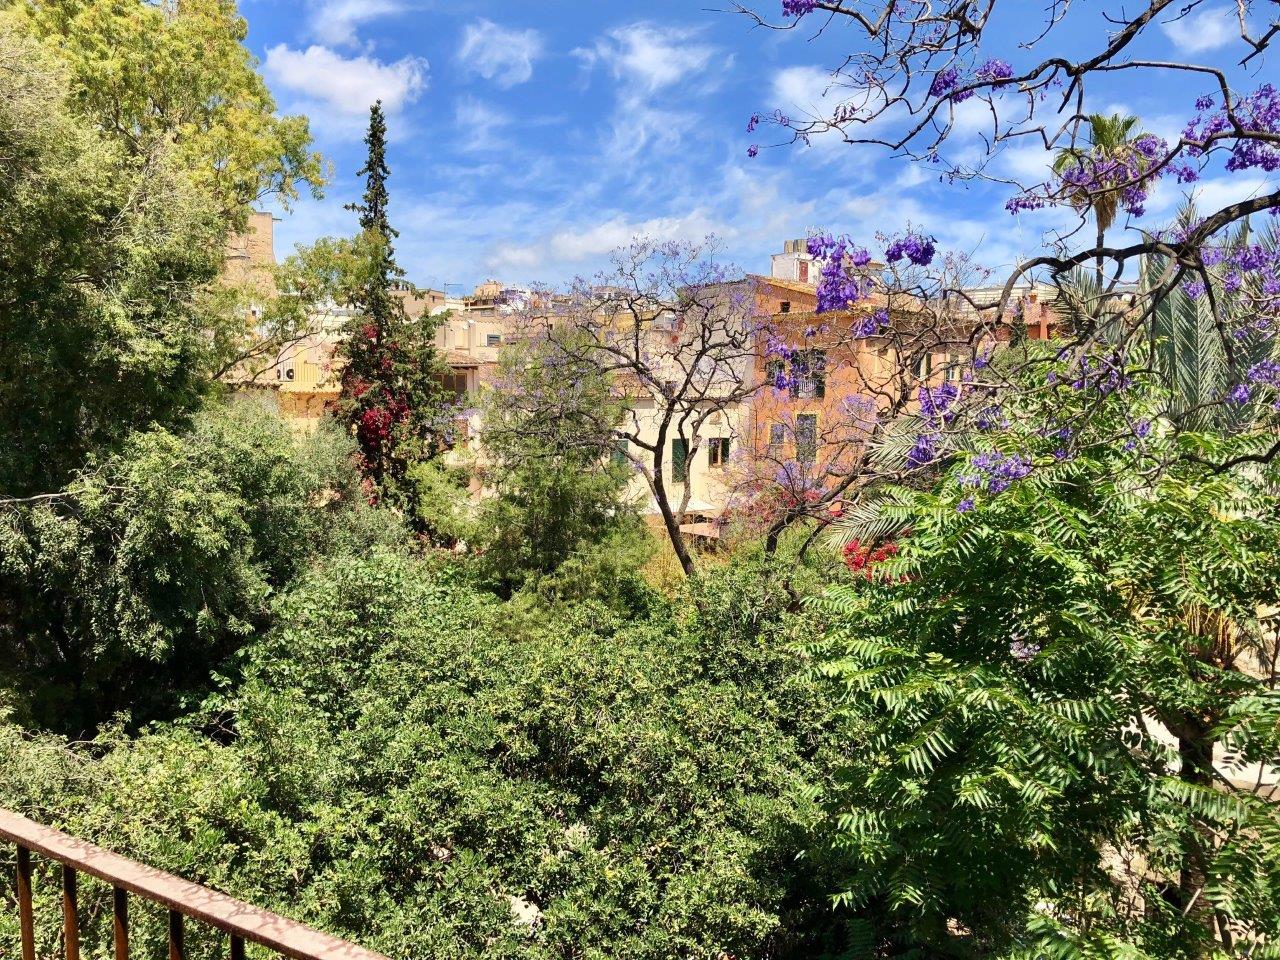 Exclusive Sneak Peek: Can Bordoy Grand House & Garden, Palma de Mallorca